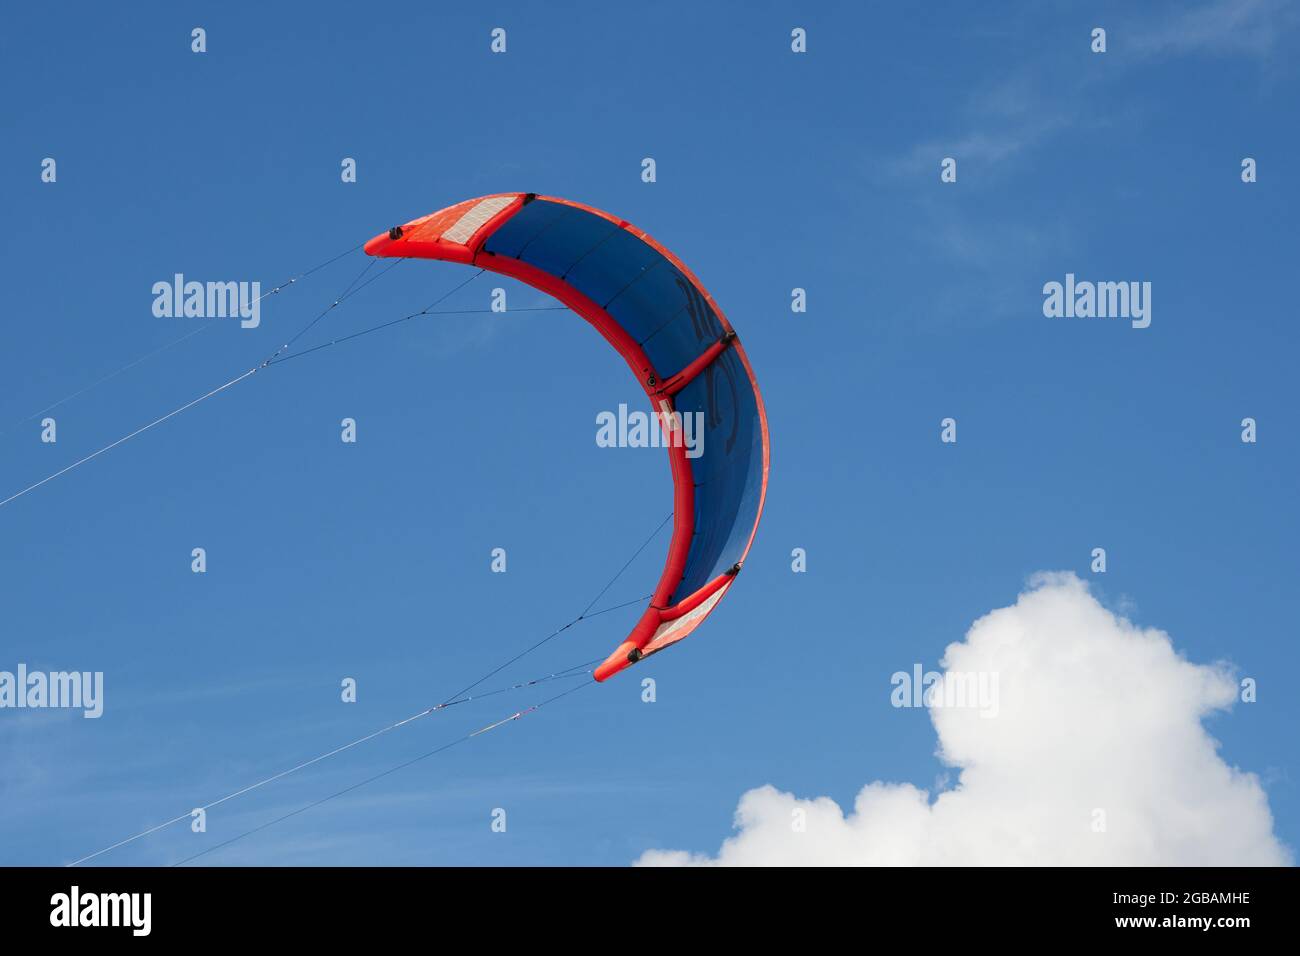 Kite-Surfen Windfolien gegen den blauen Himmel gesehen Stockfotografie -  Alamy